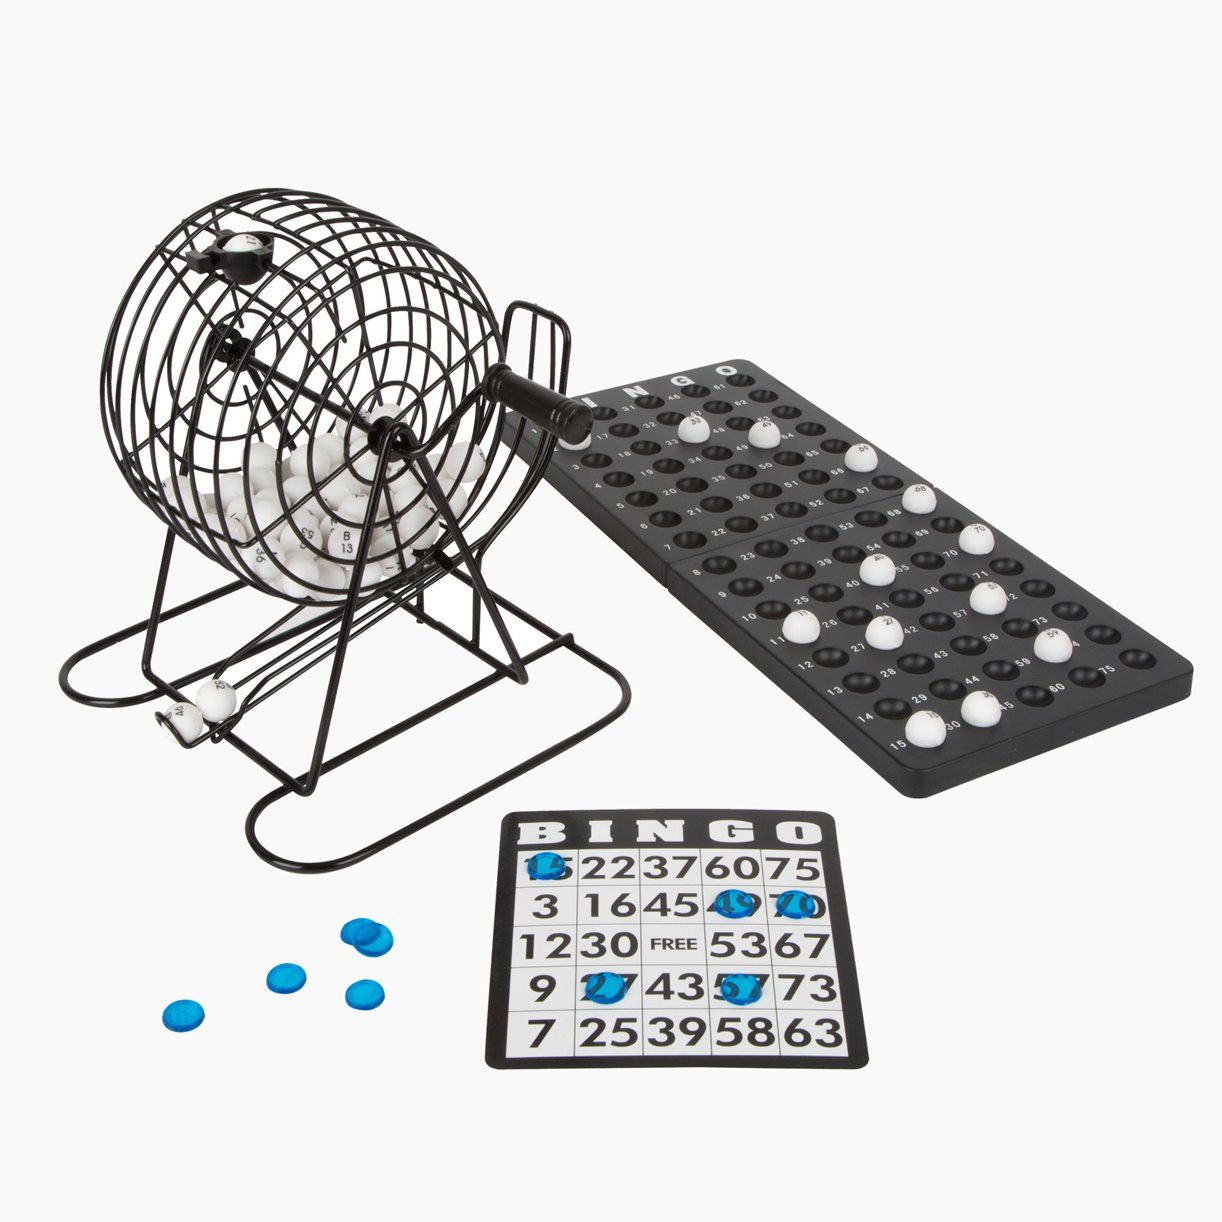 Small Foot Spielesammlung, Bingo Bingotrommel mit Zubehör, Lostrommel aus robustem Metall